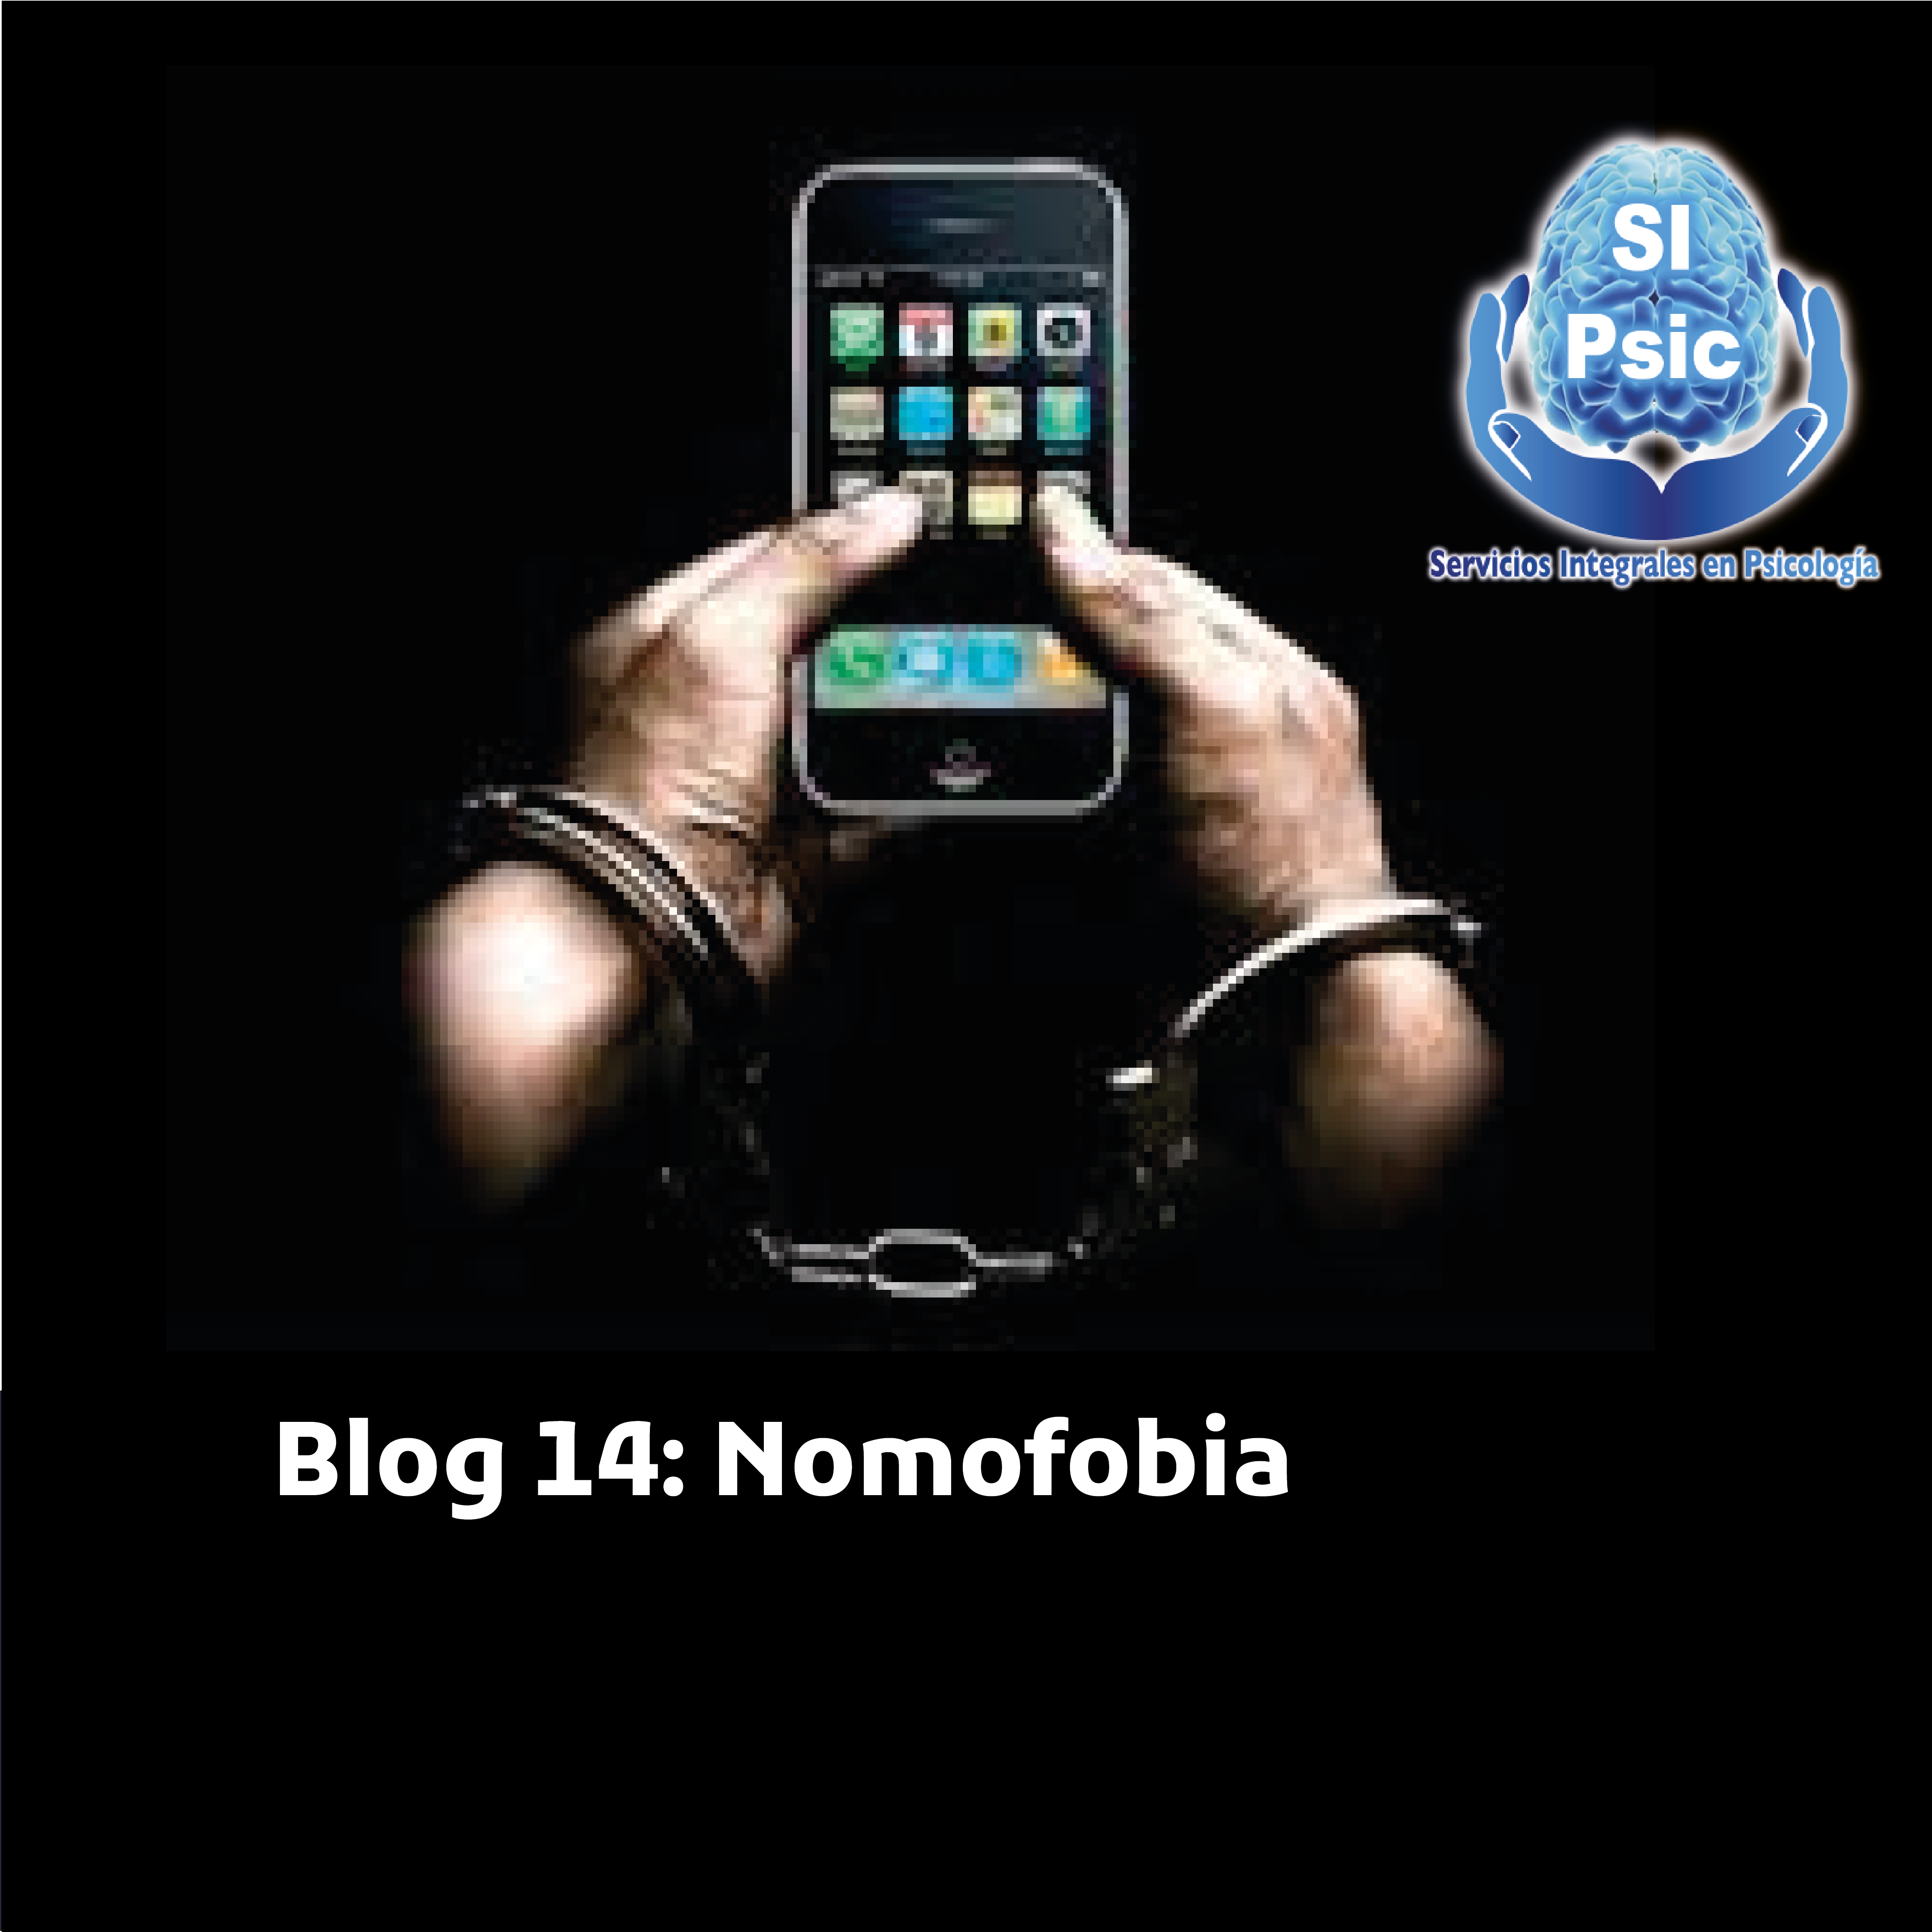 Blog 14: Nomofobia